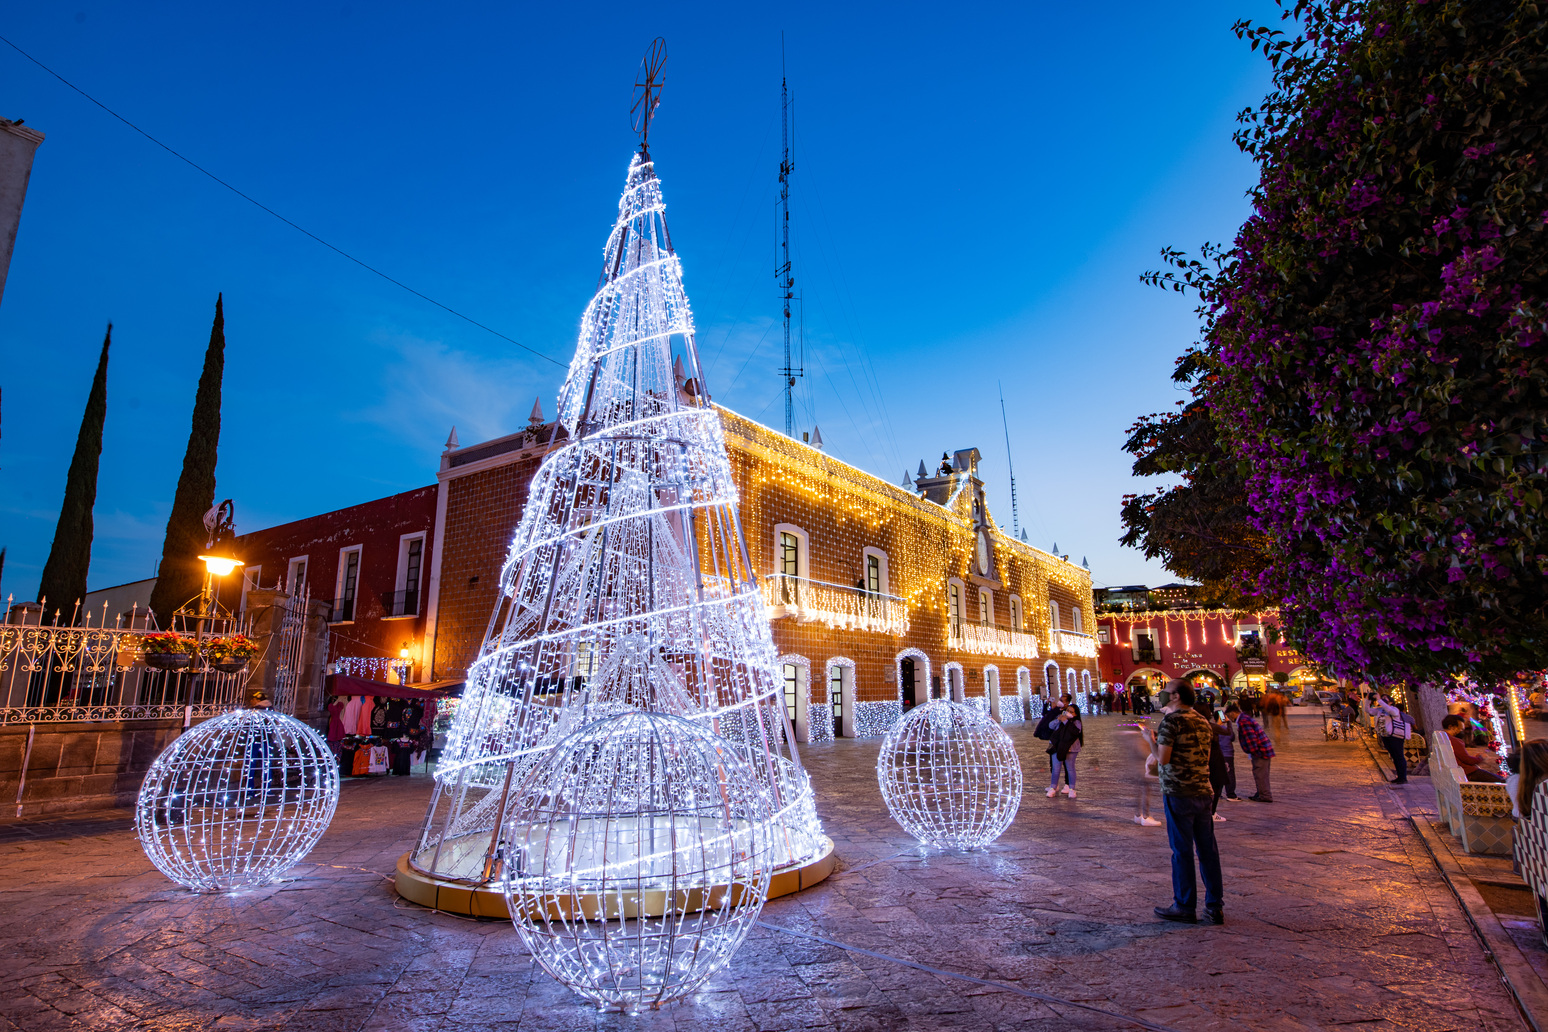 Árboles de navidad ? e iluminación navideña Municipios / Luces / Adornos  ayuntamiento